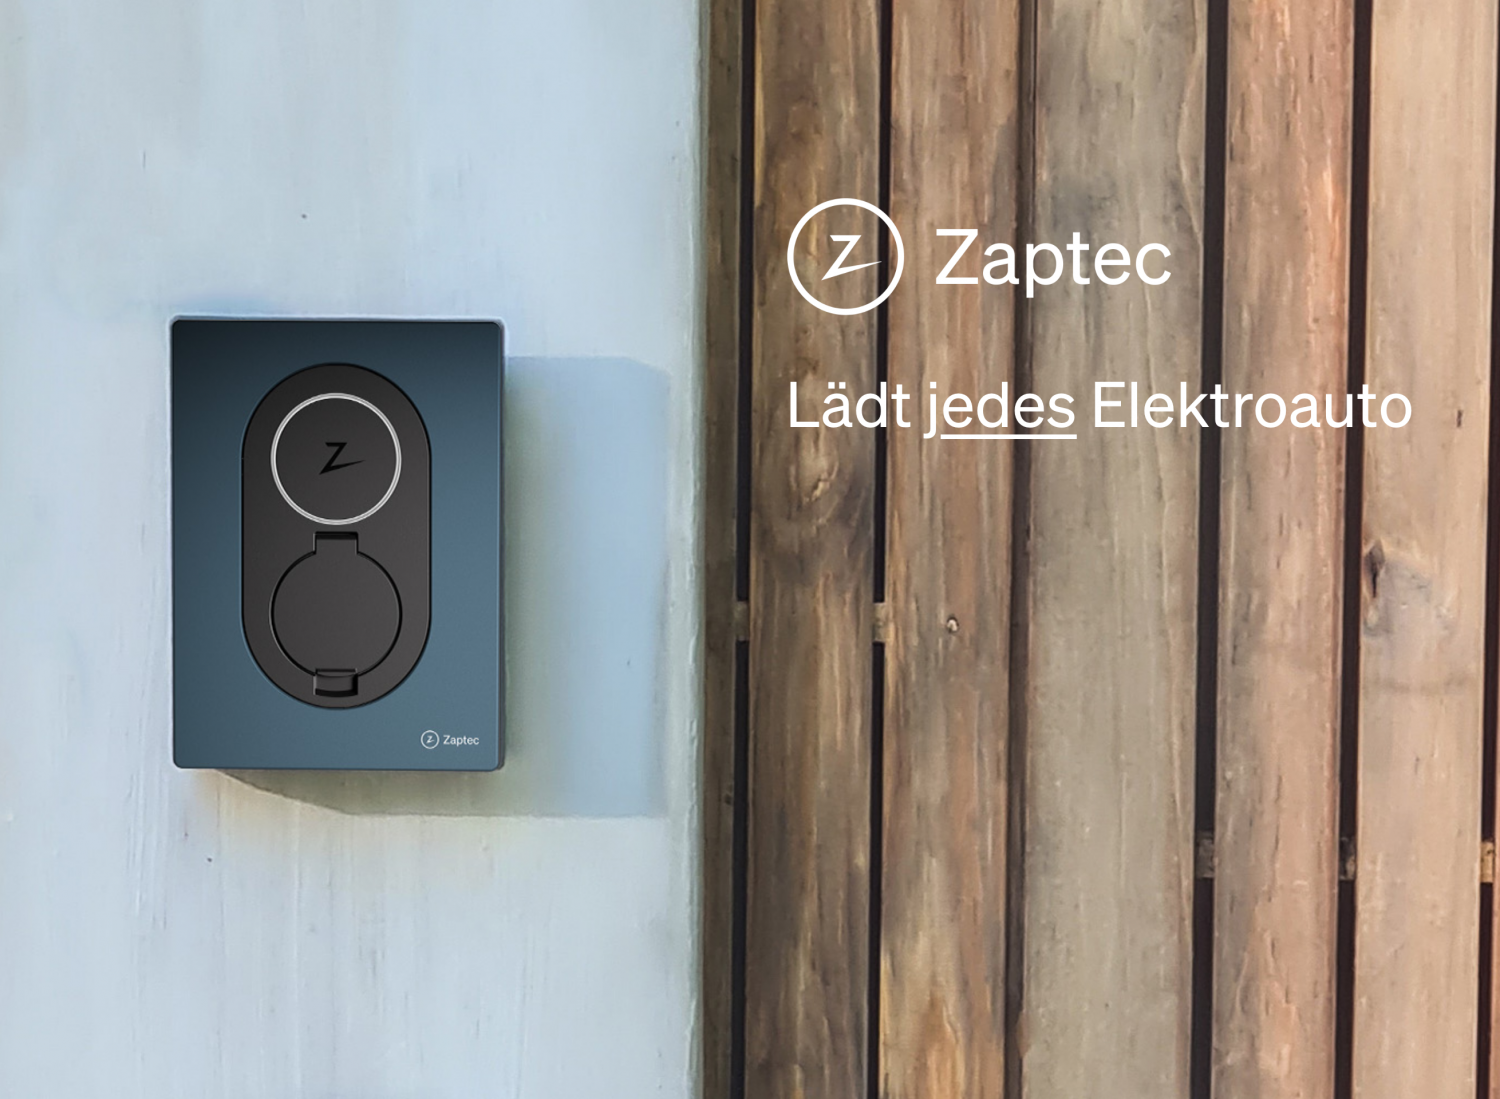 E-Ladestation von Zaptec am Haus